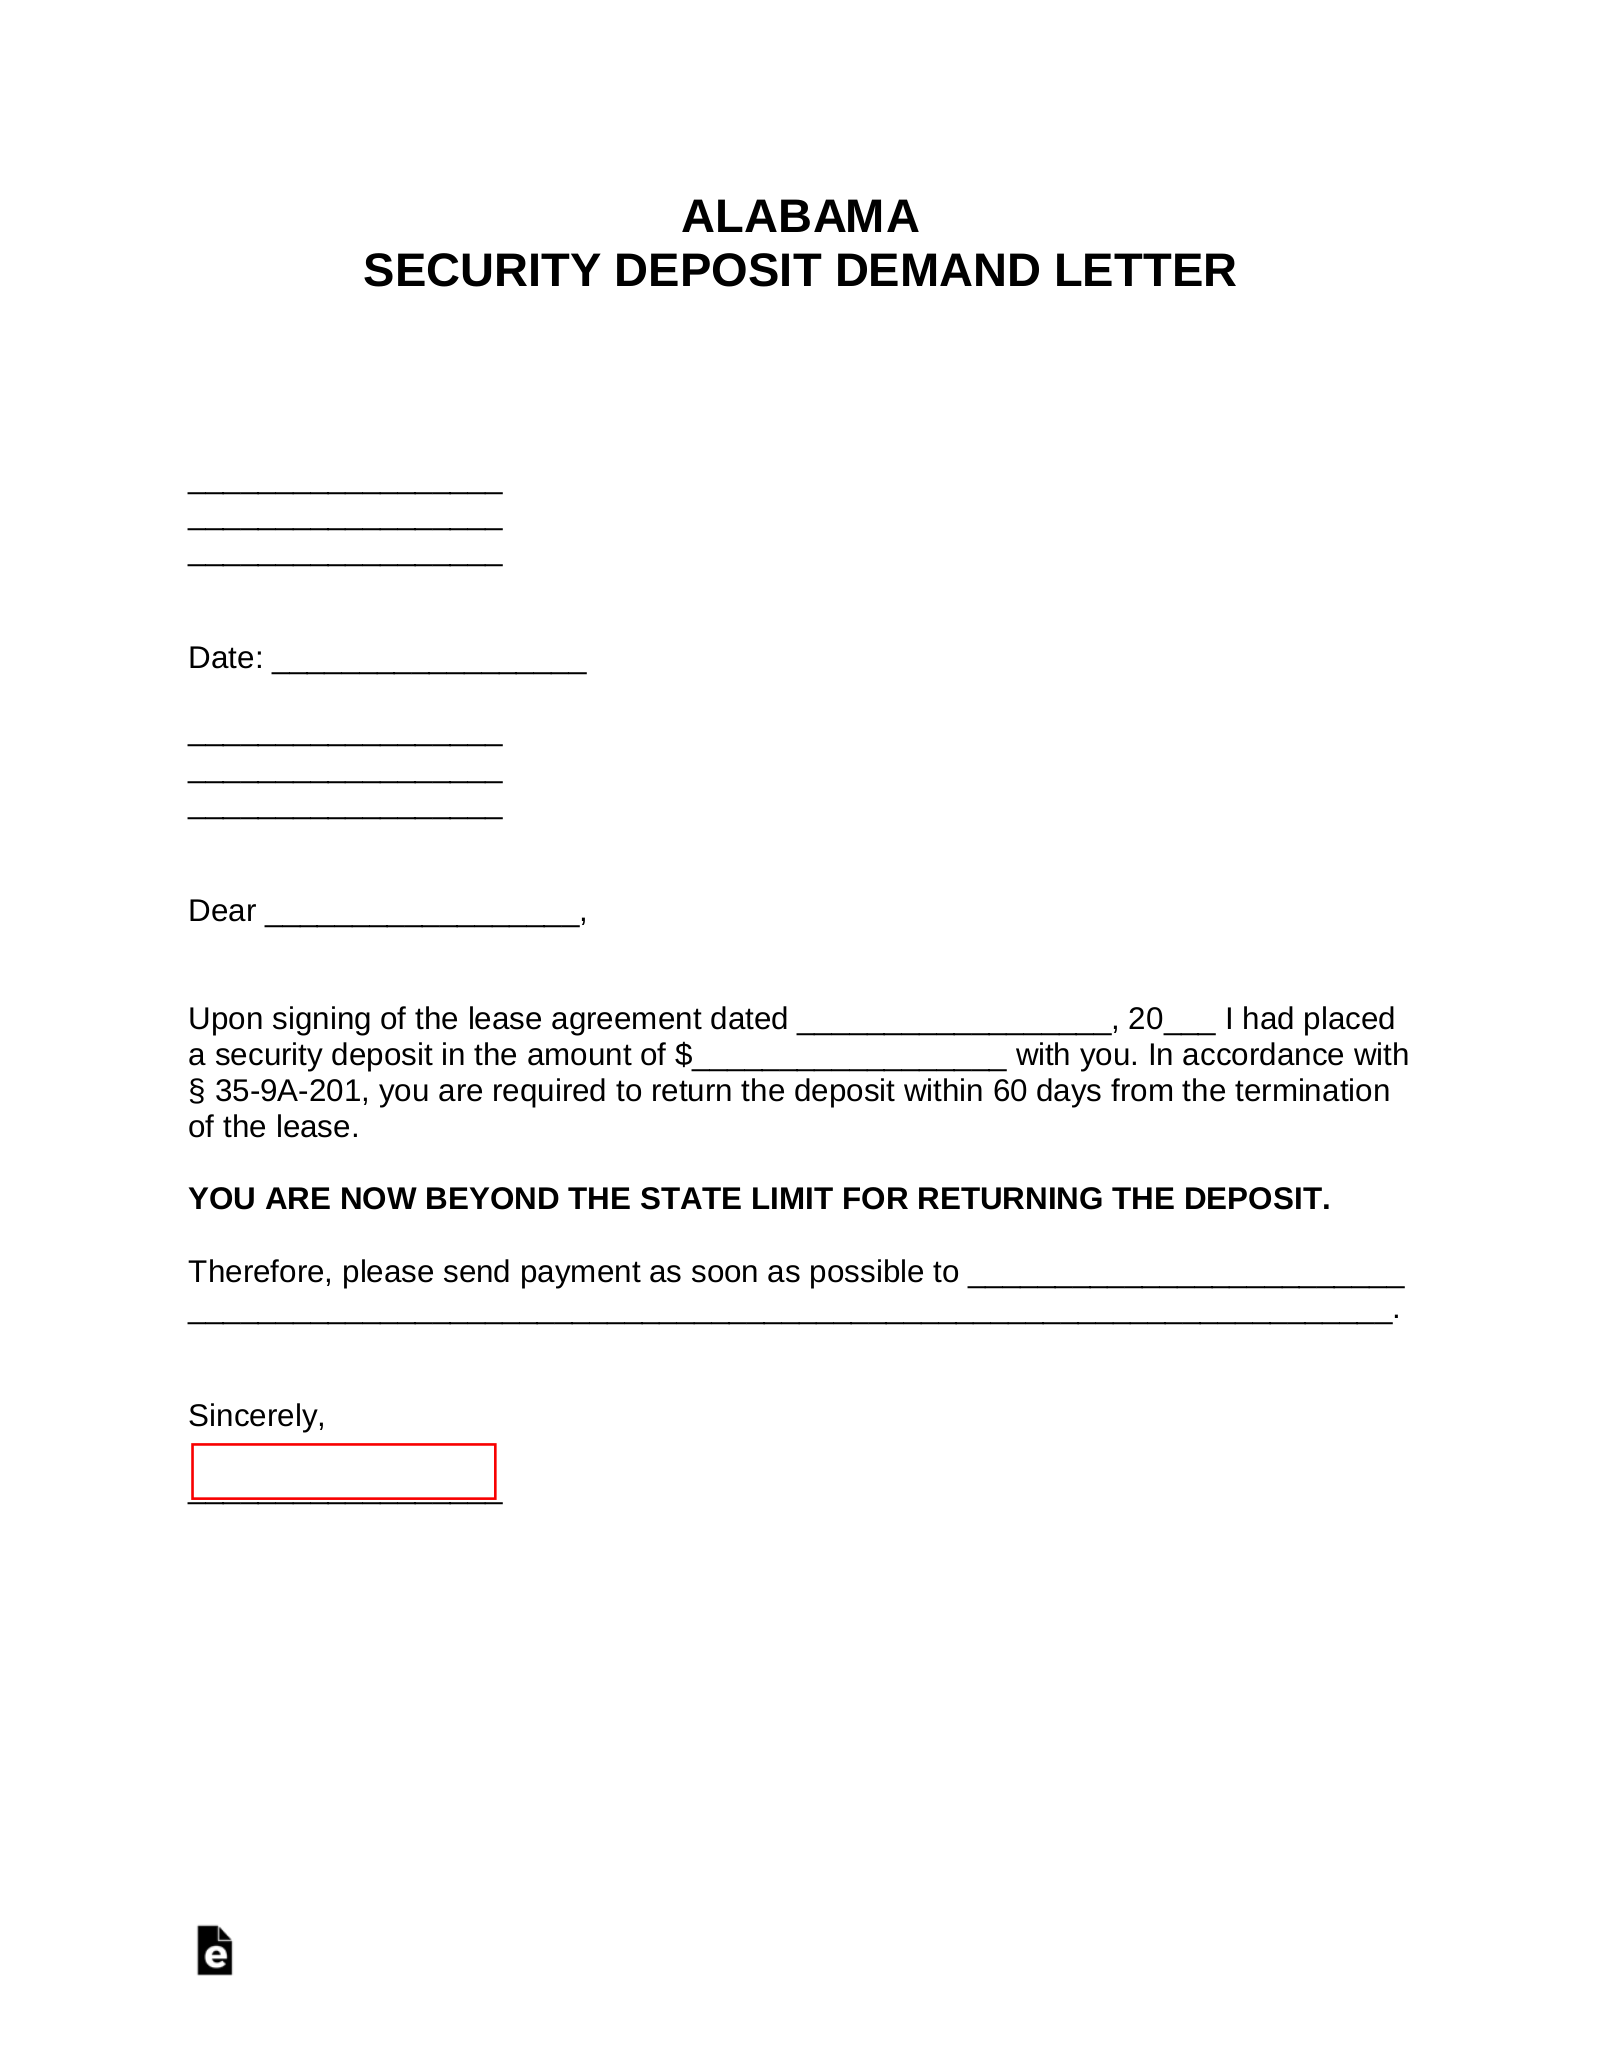 Alabama Security Deposit Demand Letter